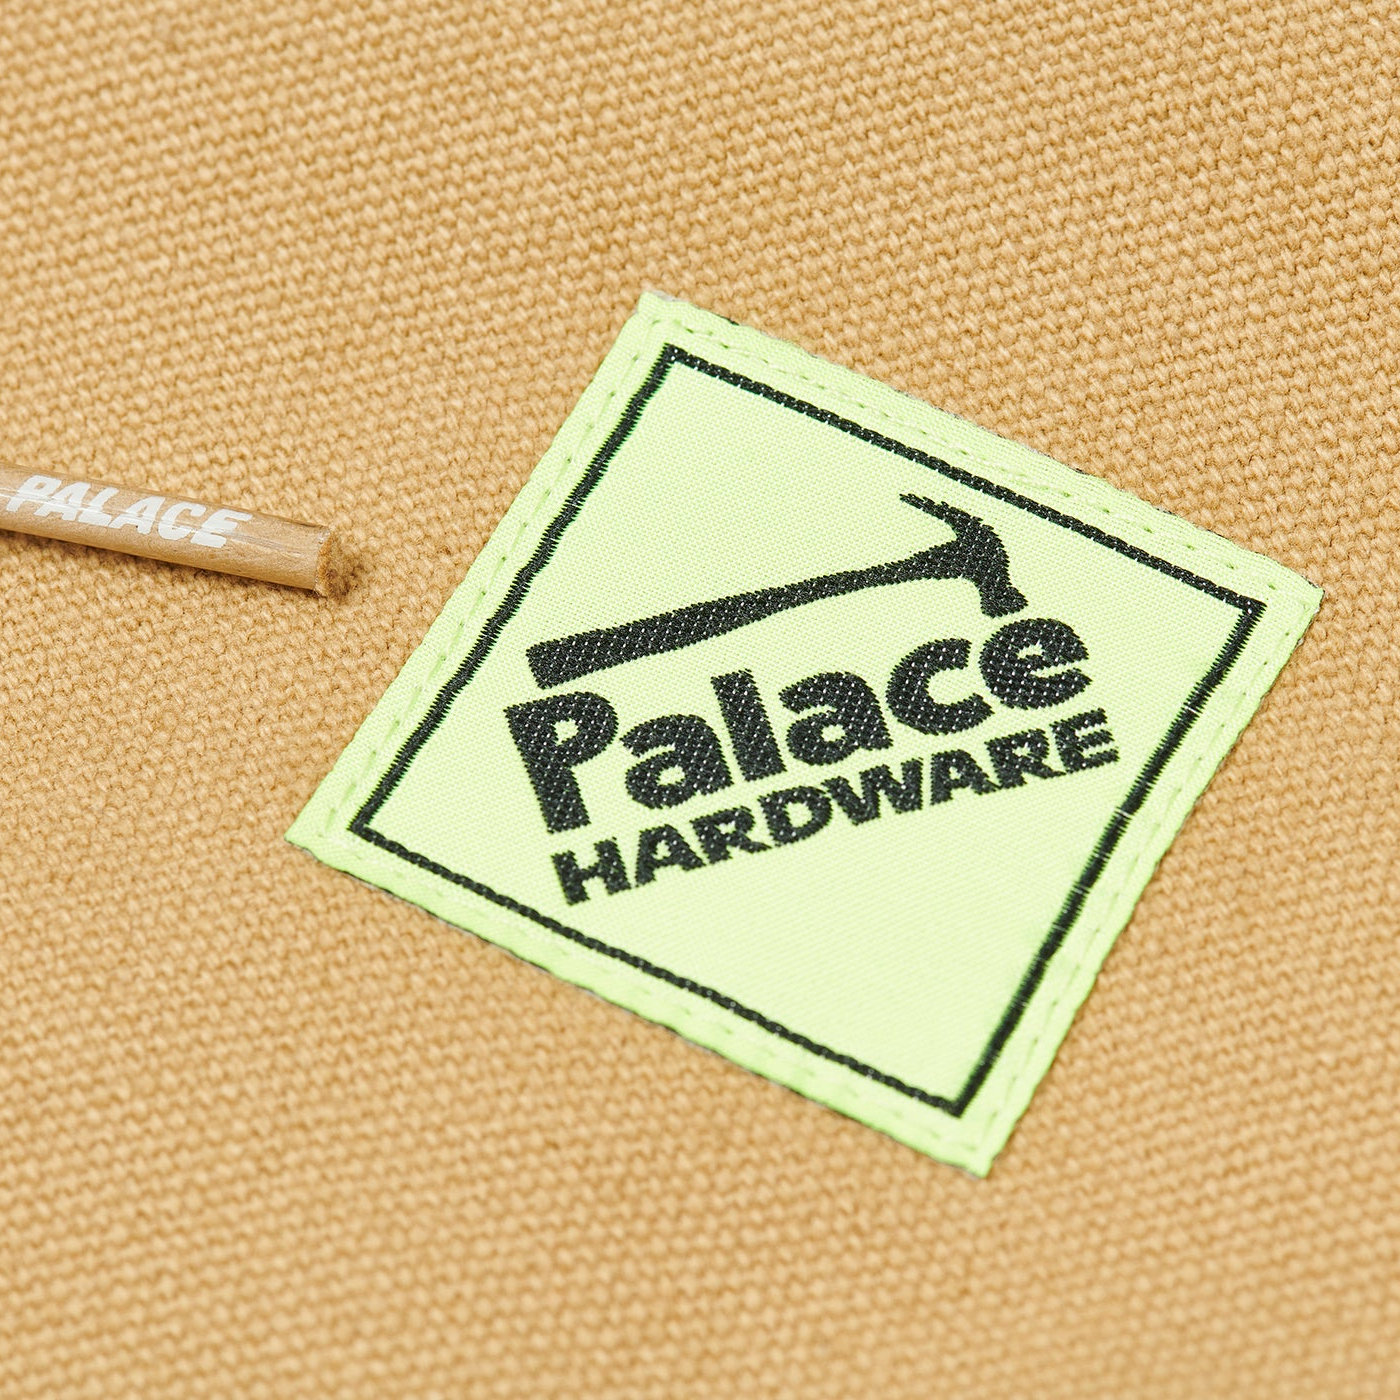 L Palace Hardware Hooded Workwear Jacket